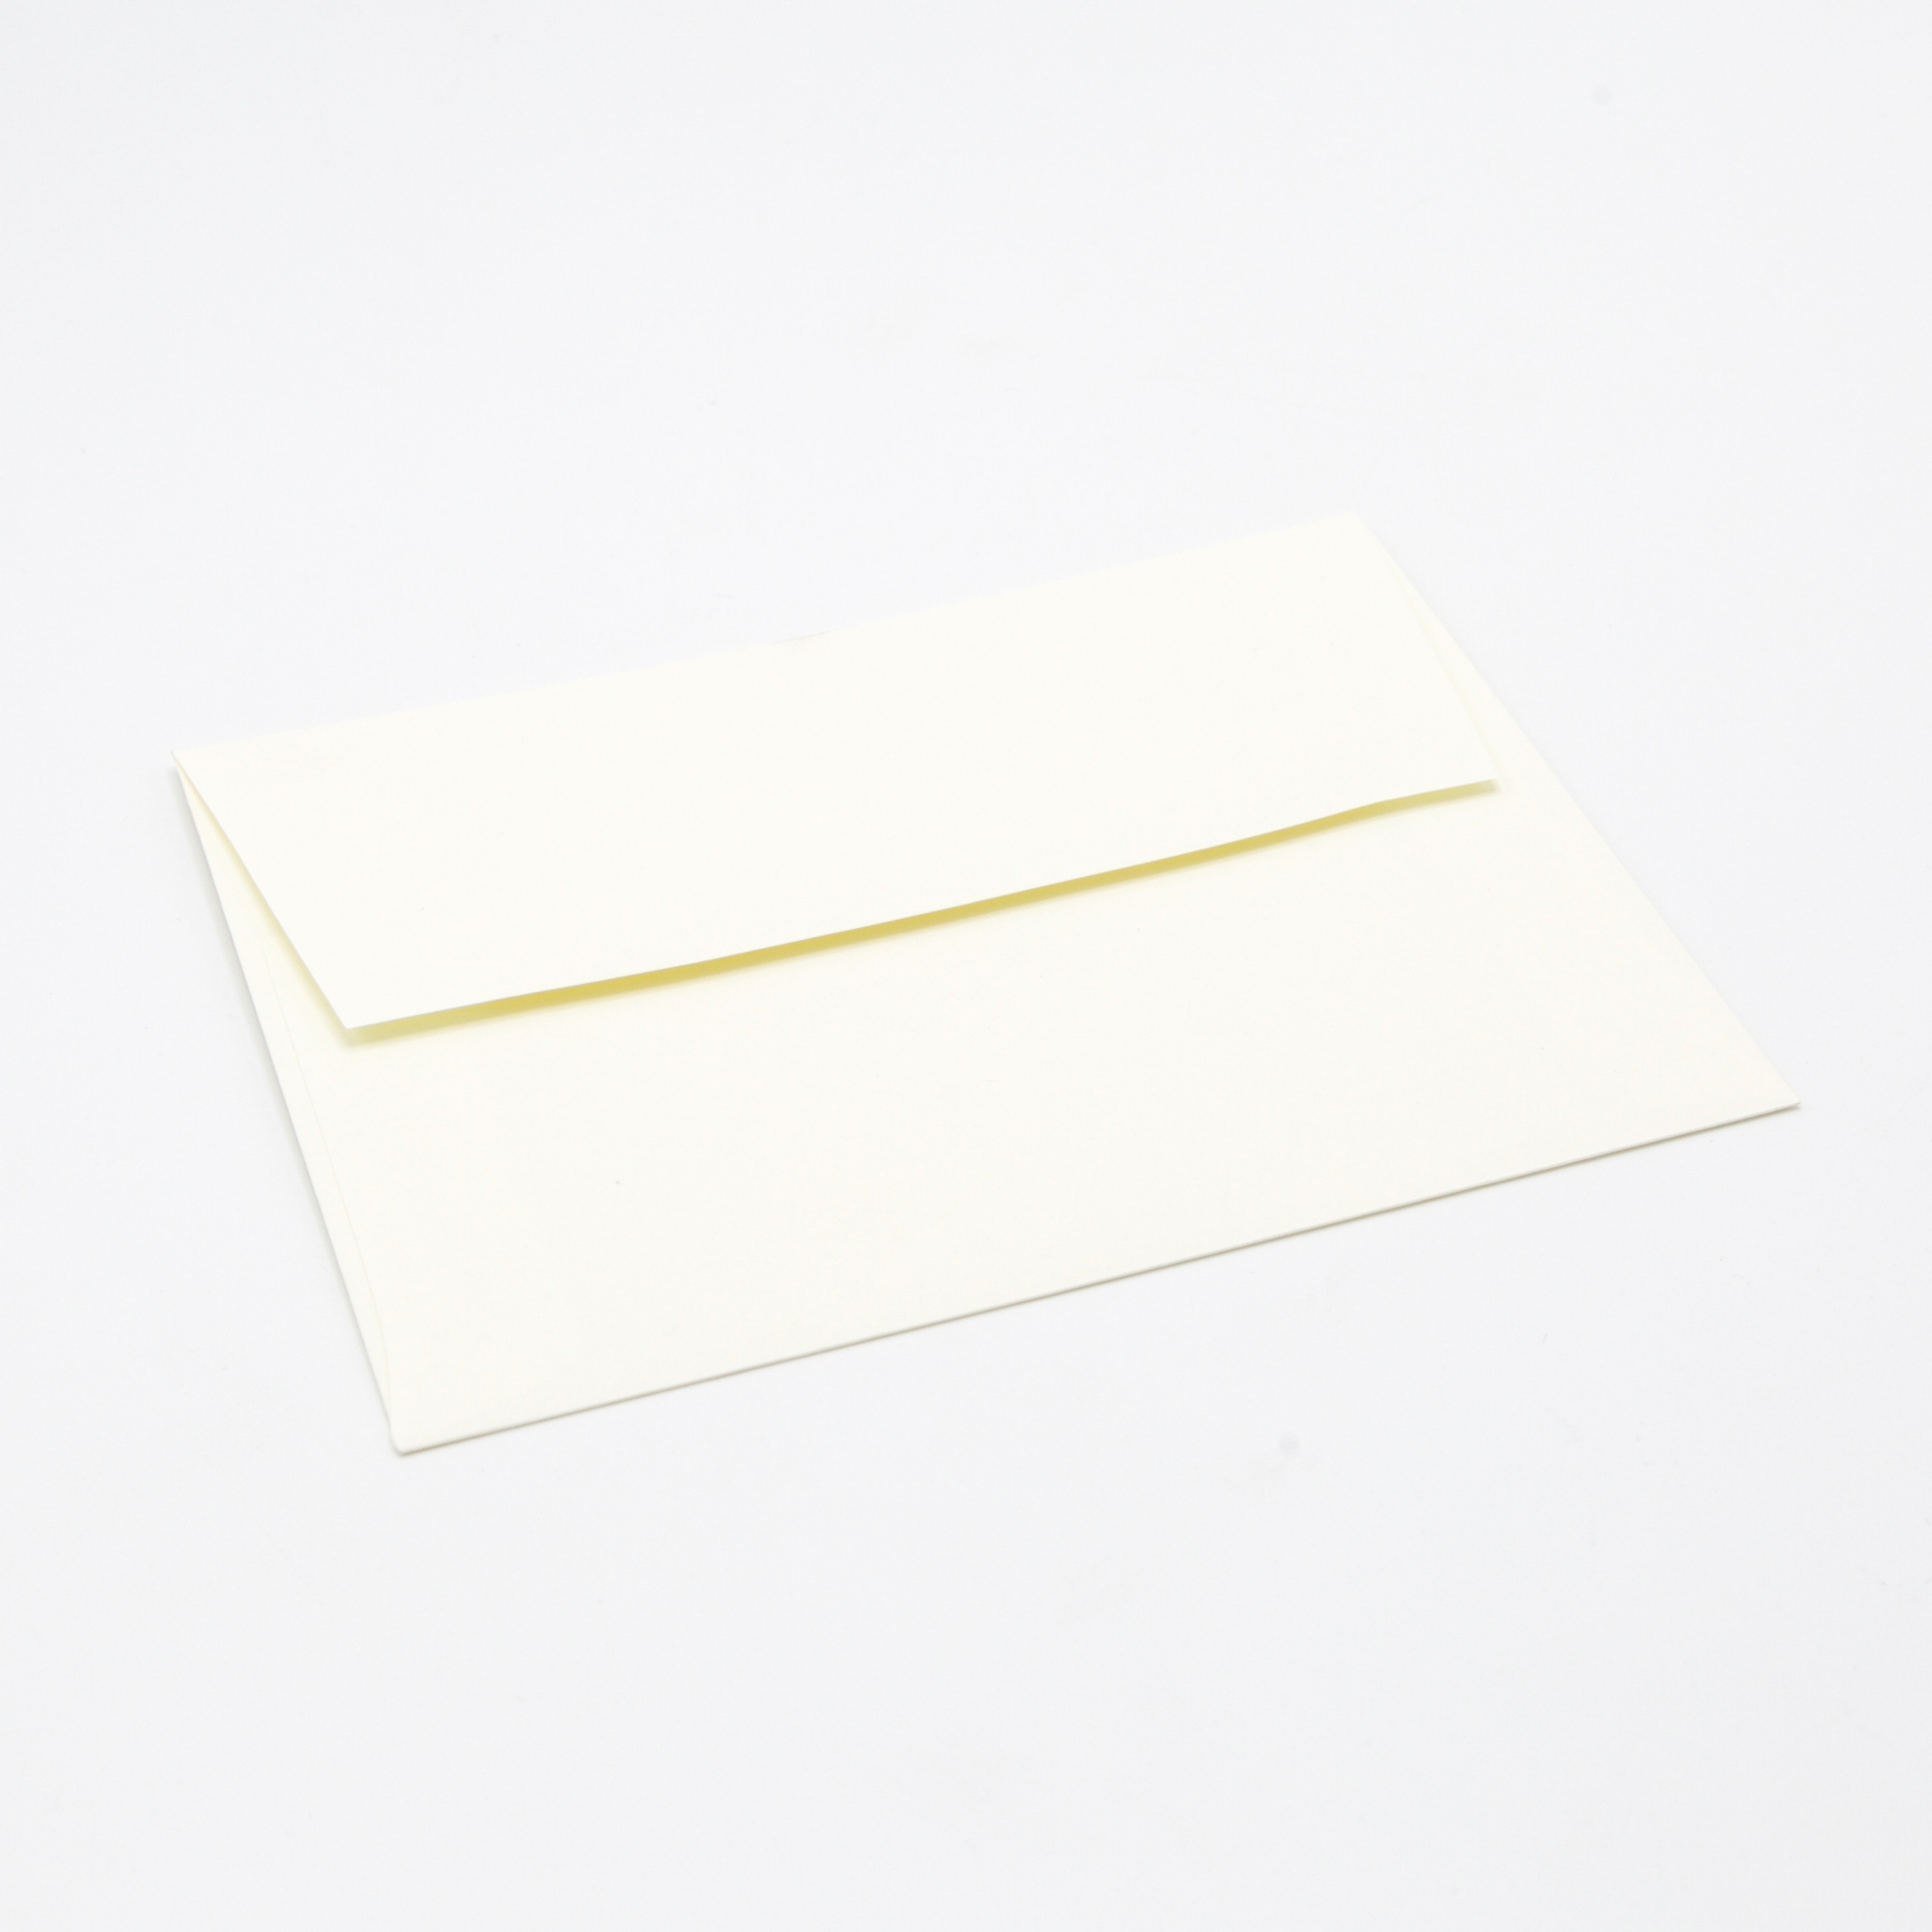 Via Vellum Pure White Envelopes - A2 (4 3/8 x 5 3/4) 70 lb Text Vellum 250  per Box